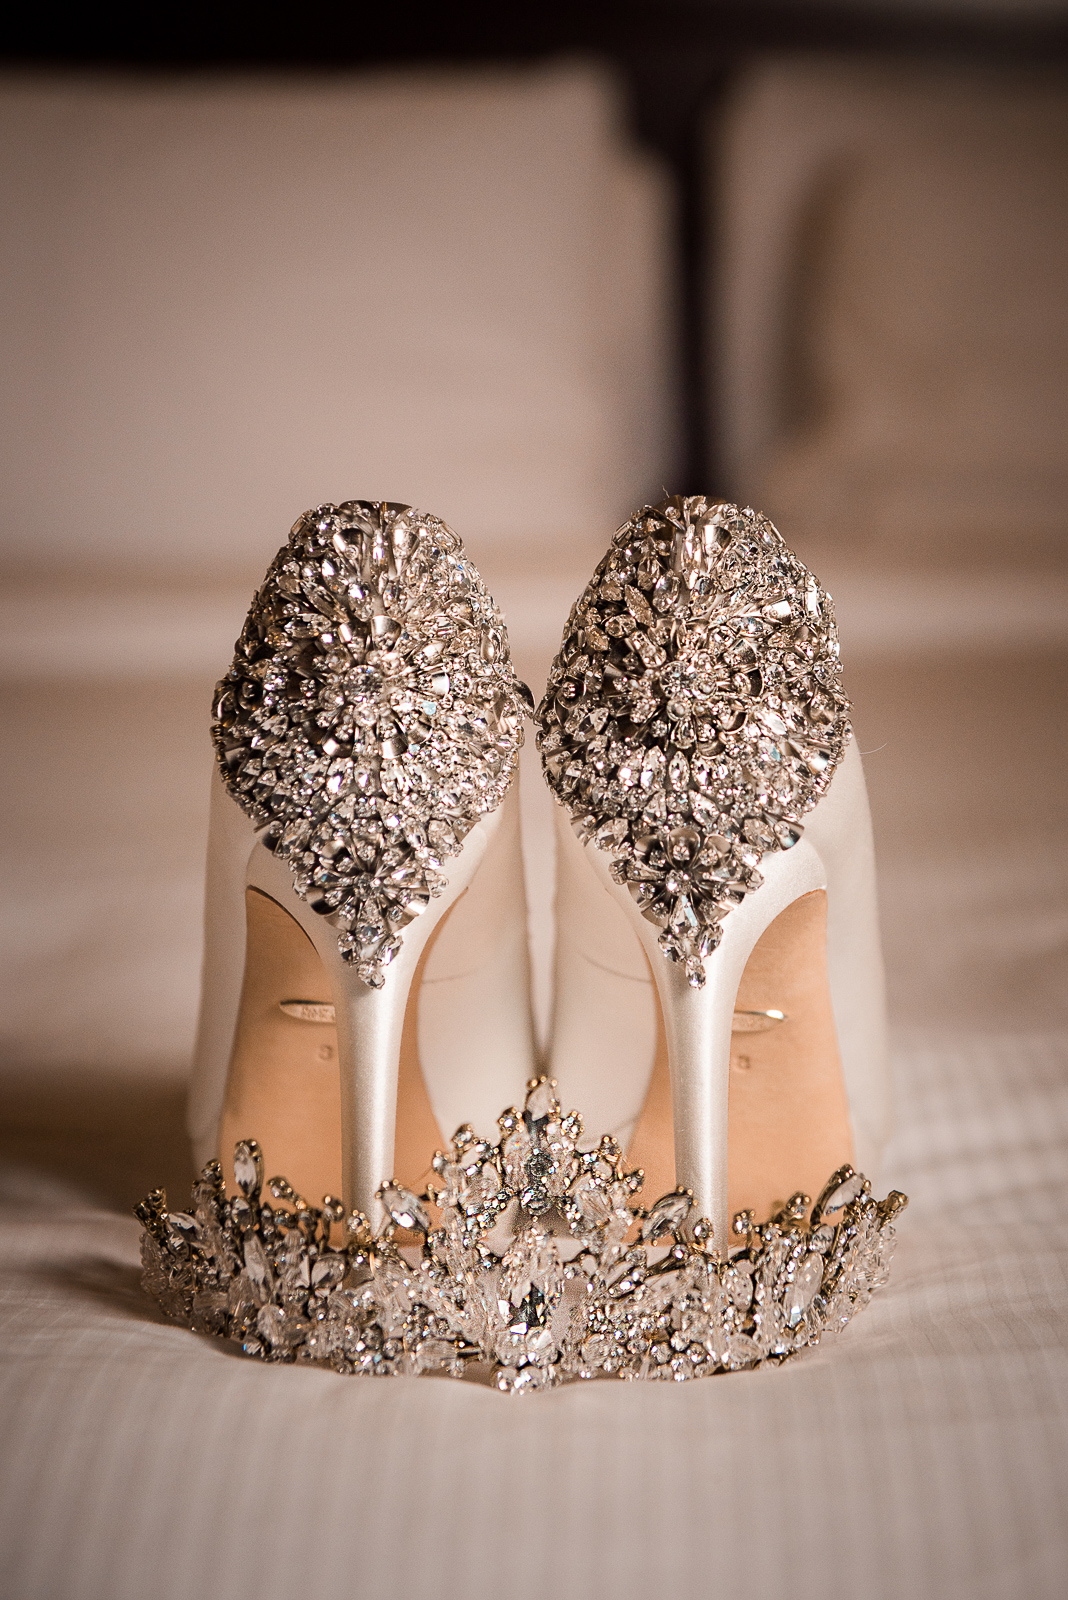 Fotos de zapatos y corona de la novia para bodas en Republica Dominicana por el fotografo dominicano Greg Dotel Photography